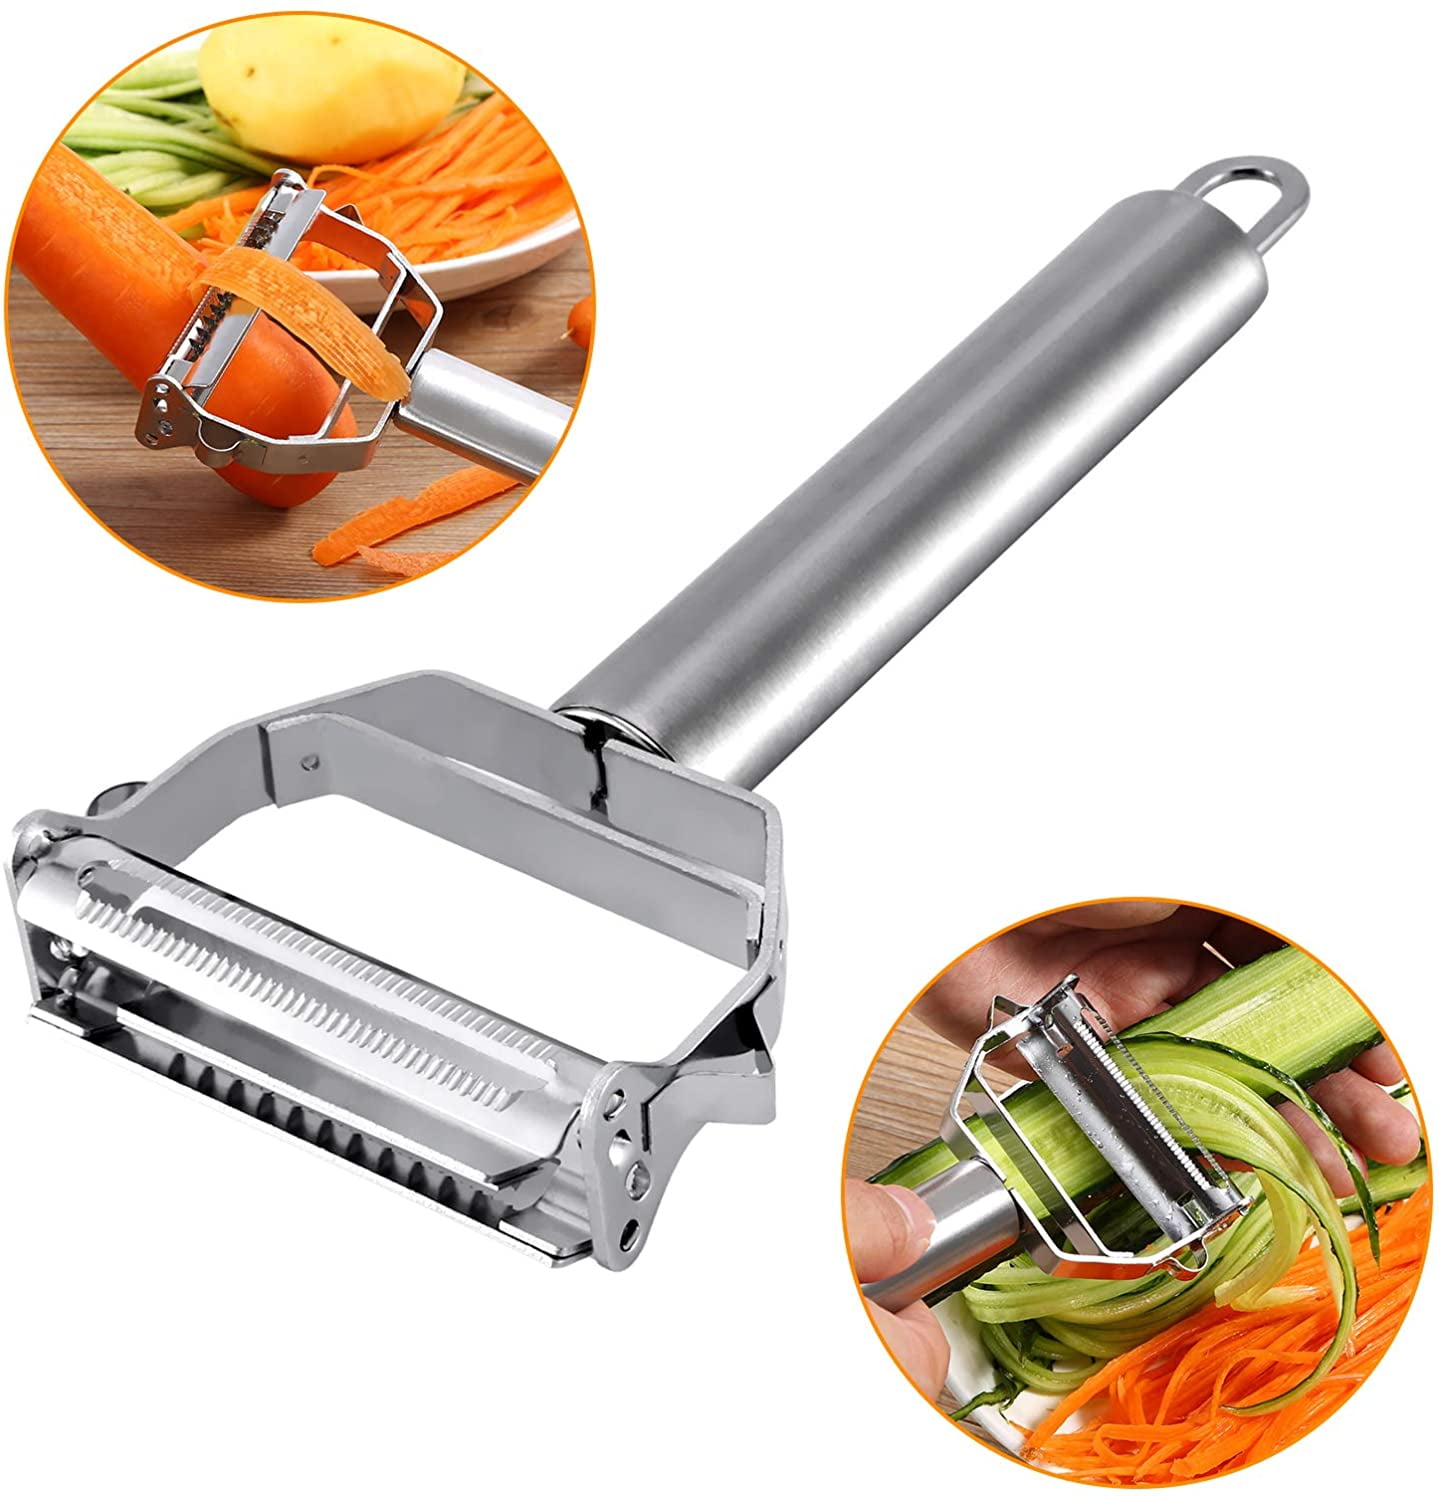 Stainless Steel Carrot Potato Fruit Peeler Vegetable Grater Cutter Kitchen Tool